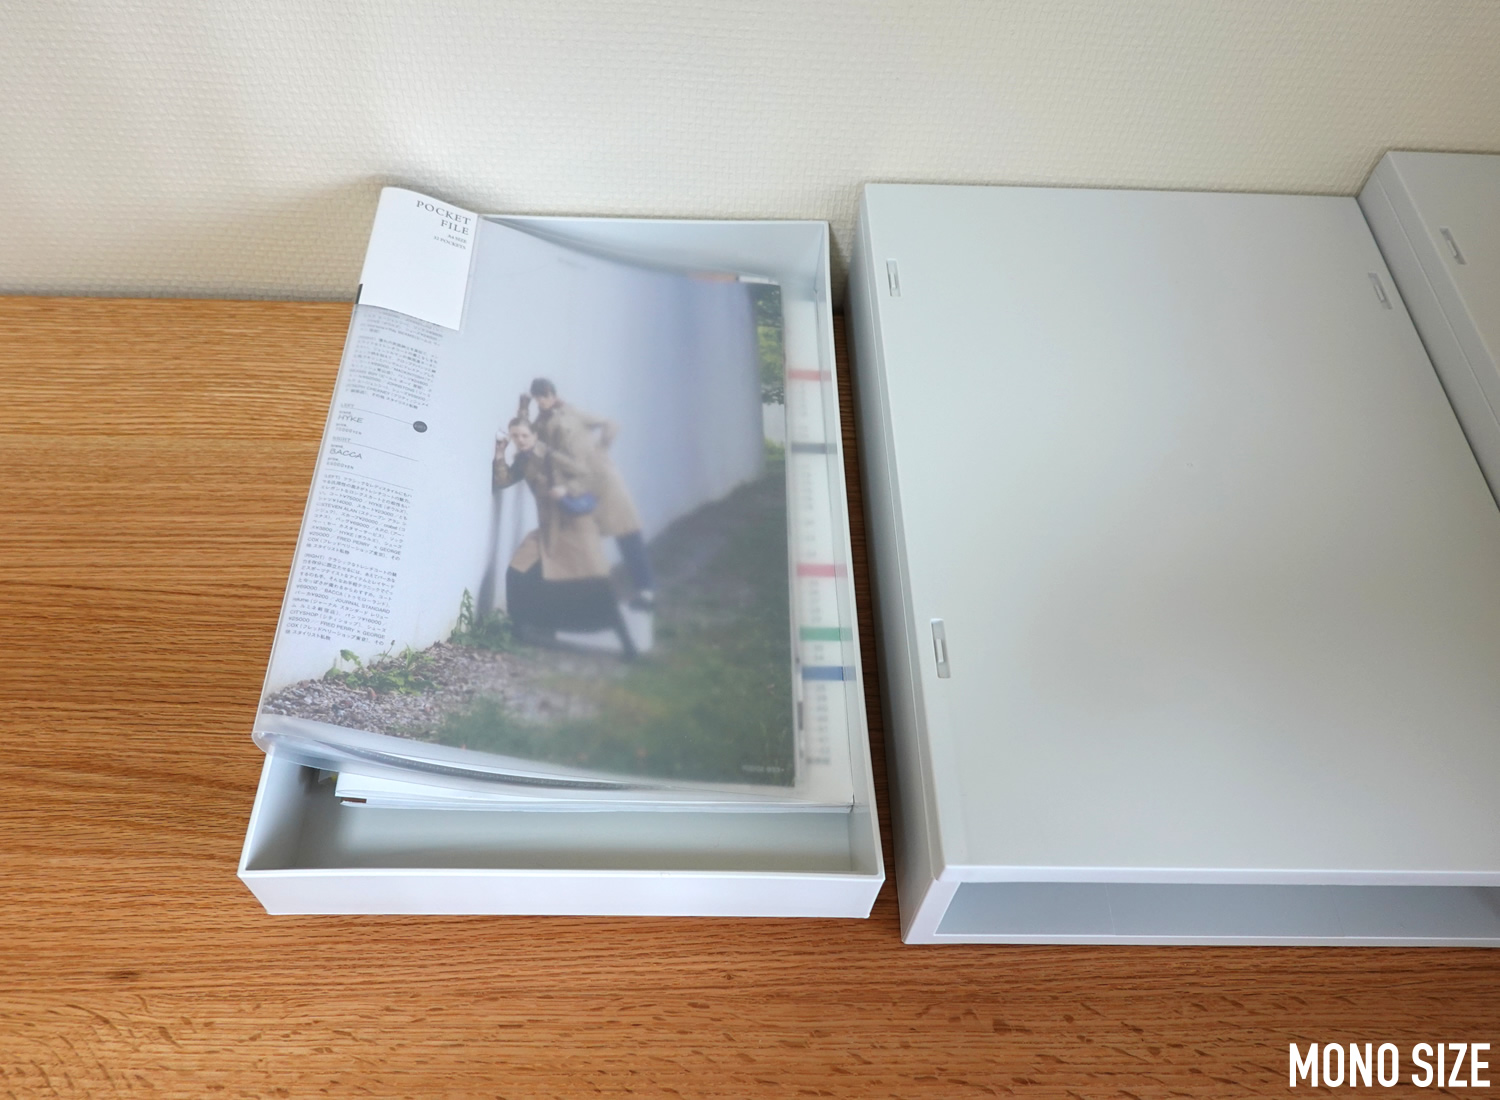 無印良品で売られていたポリプロピレンケース・引出式・薄型・縦・ホワイトグレーの収納グッズ商品画像